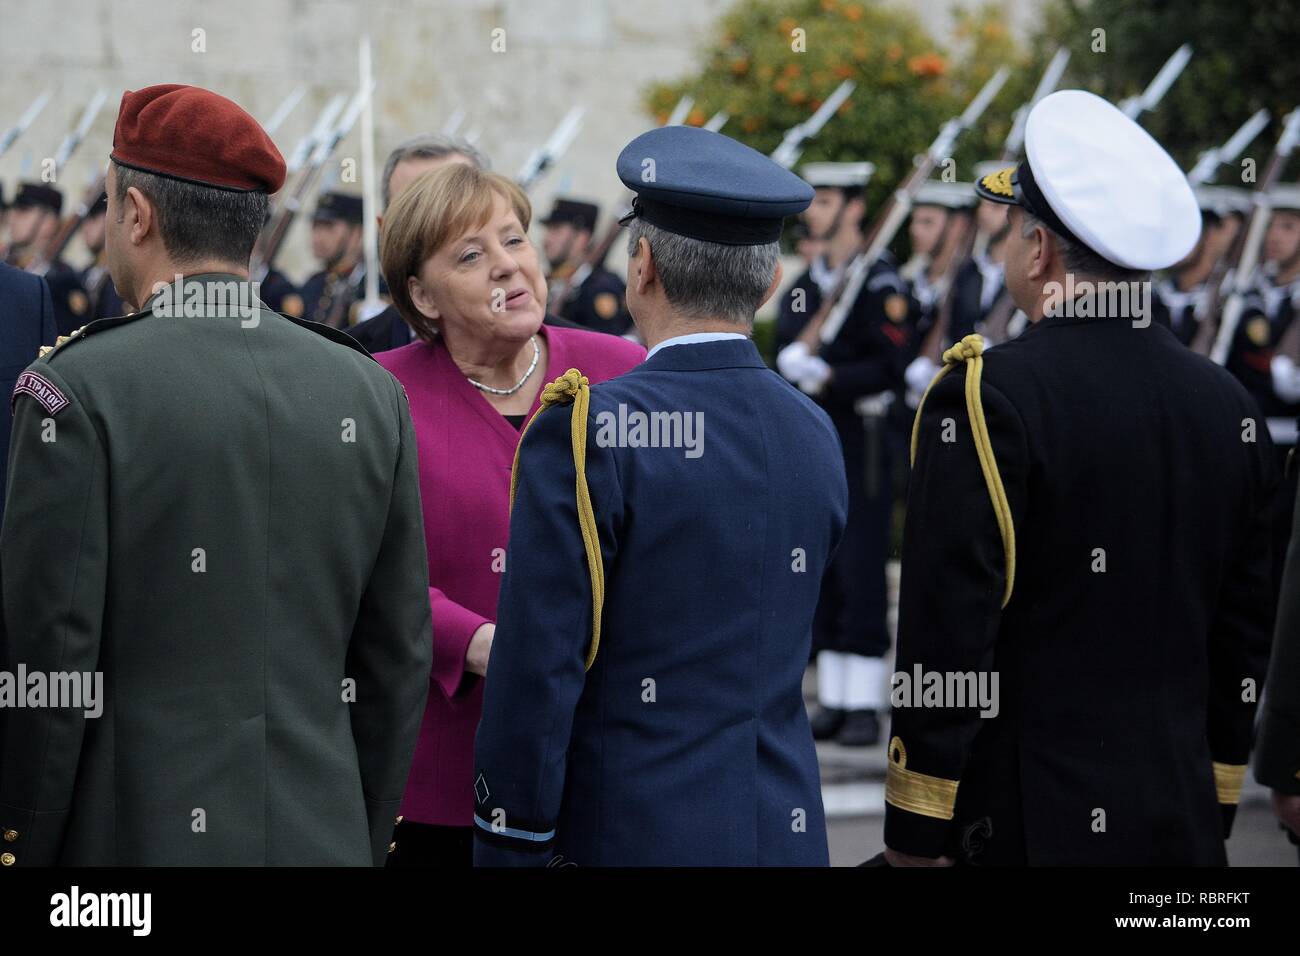 Chancelier de la République fédérale d'Allemagne, Angela Merkel, vu l'inspection de la garde d'honneur après la cérémonie de pose de gerbe au Monument du Soldat inconnu. Banque D'Images